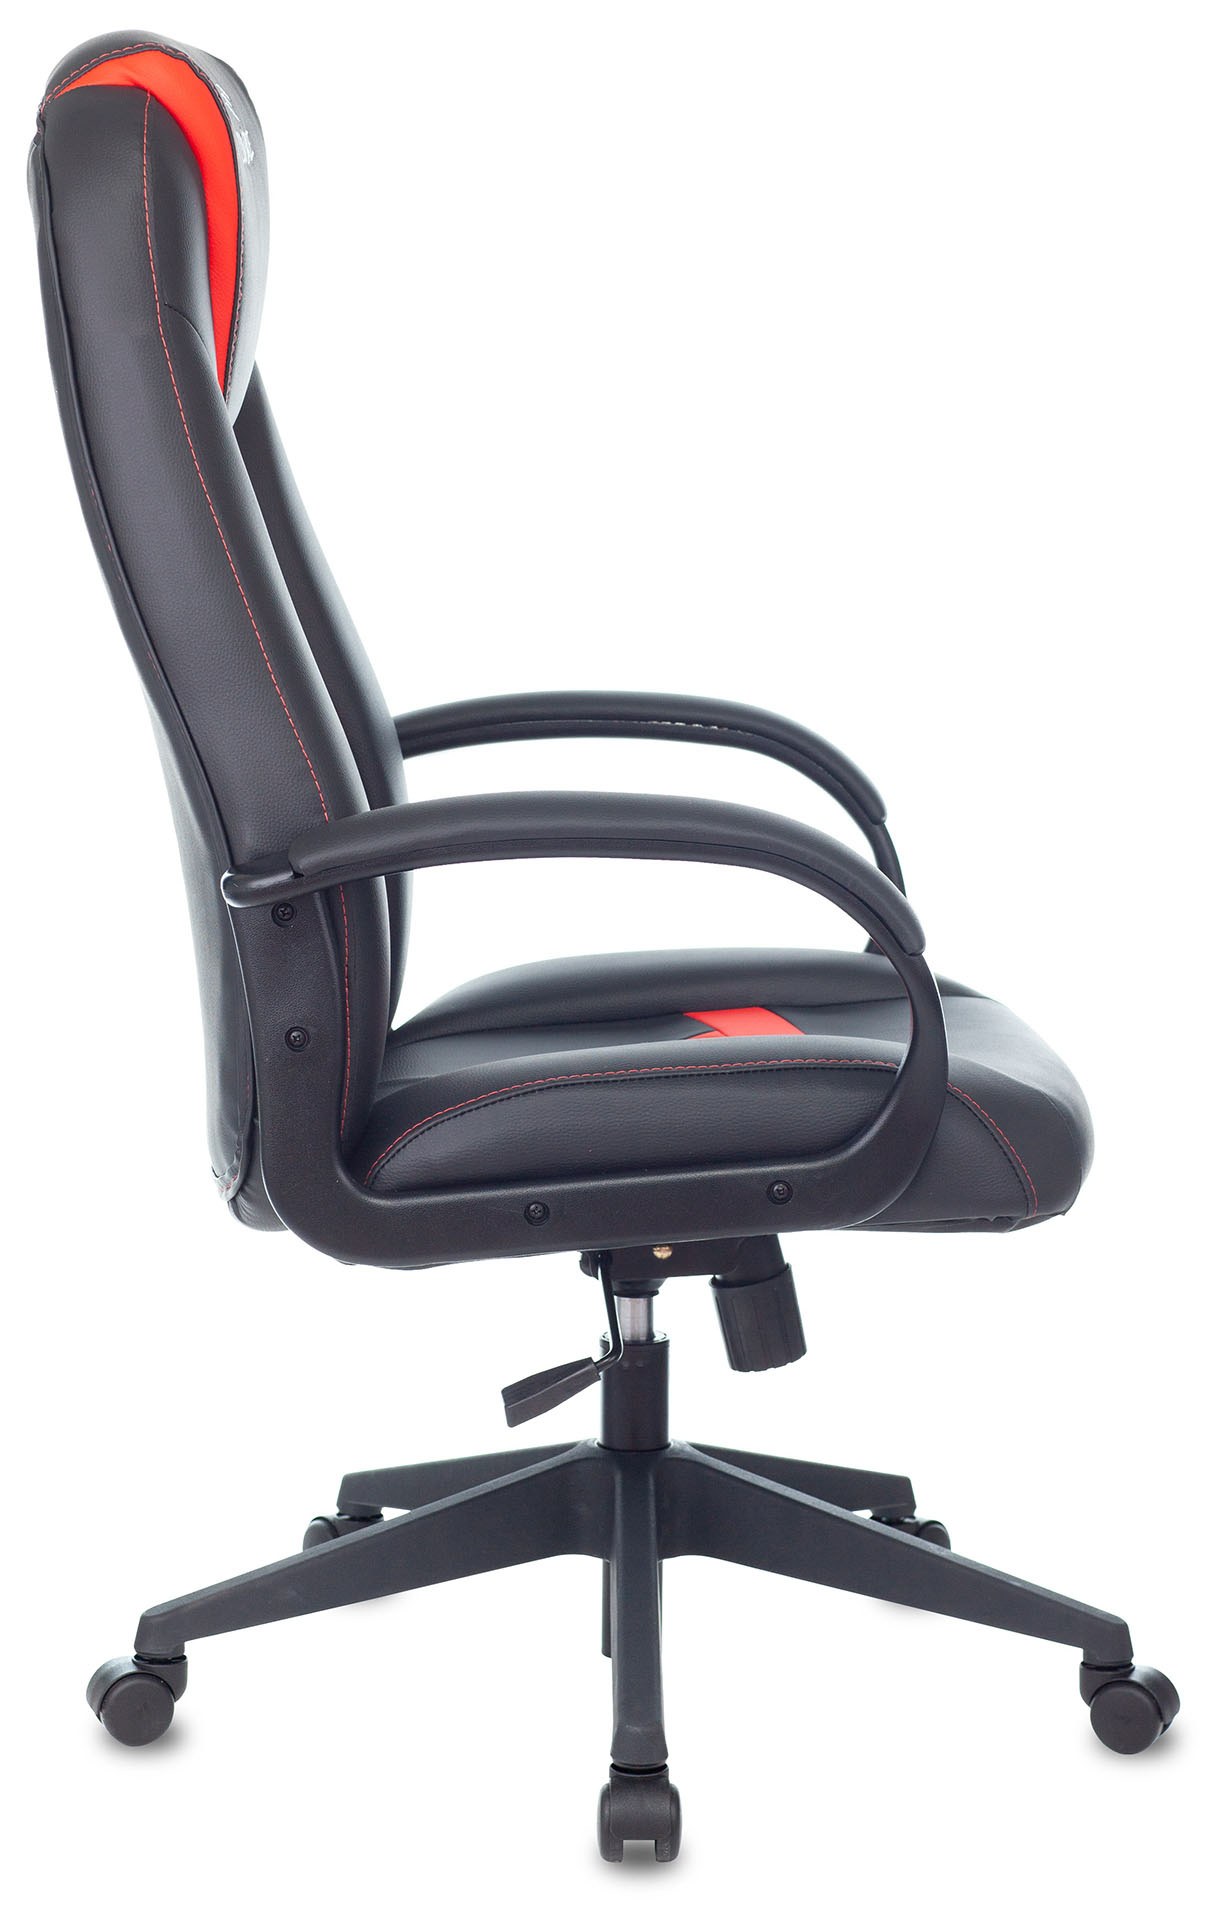 Кресло игровое Zombie 8, обивка: эко.кожа, цвет: черный/красный (ZOMBIE 8 RED) от магазина Buro.store